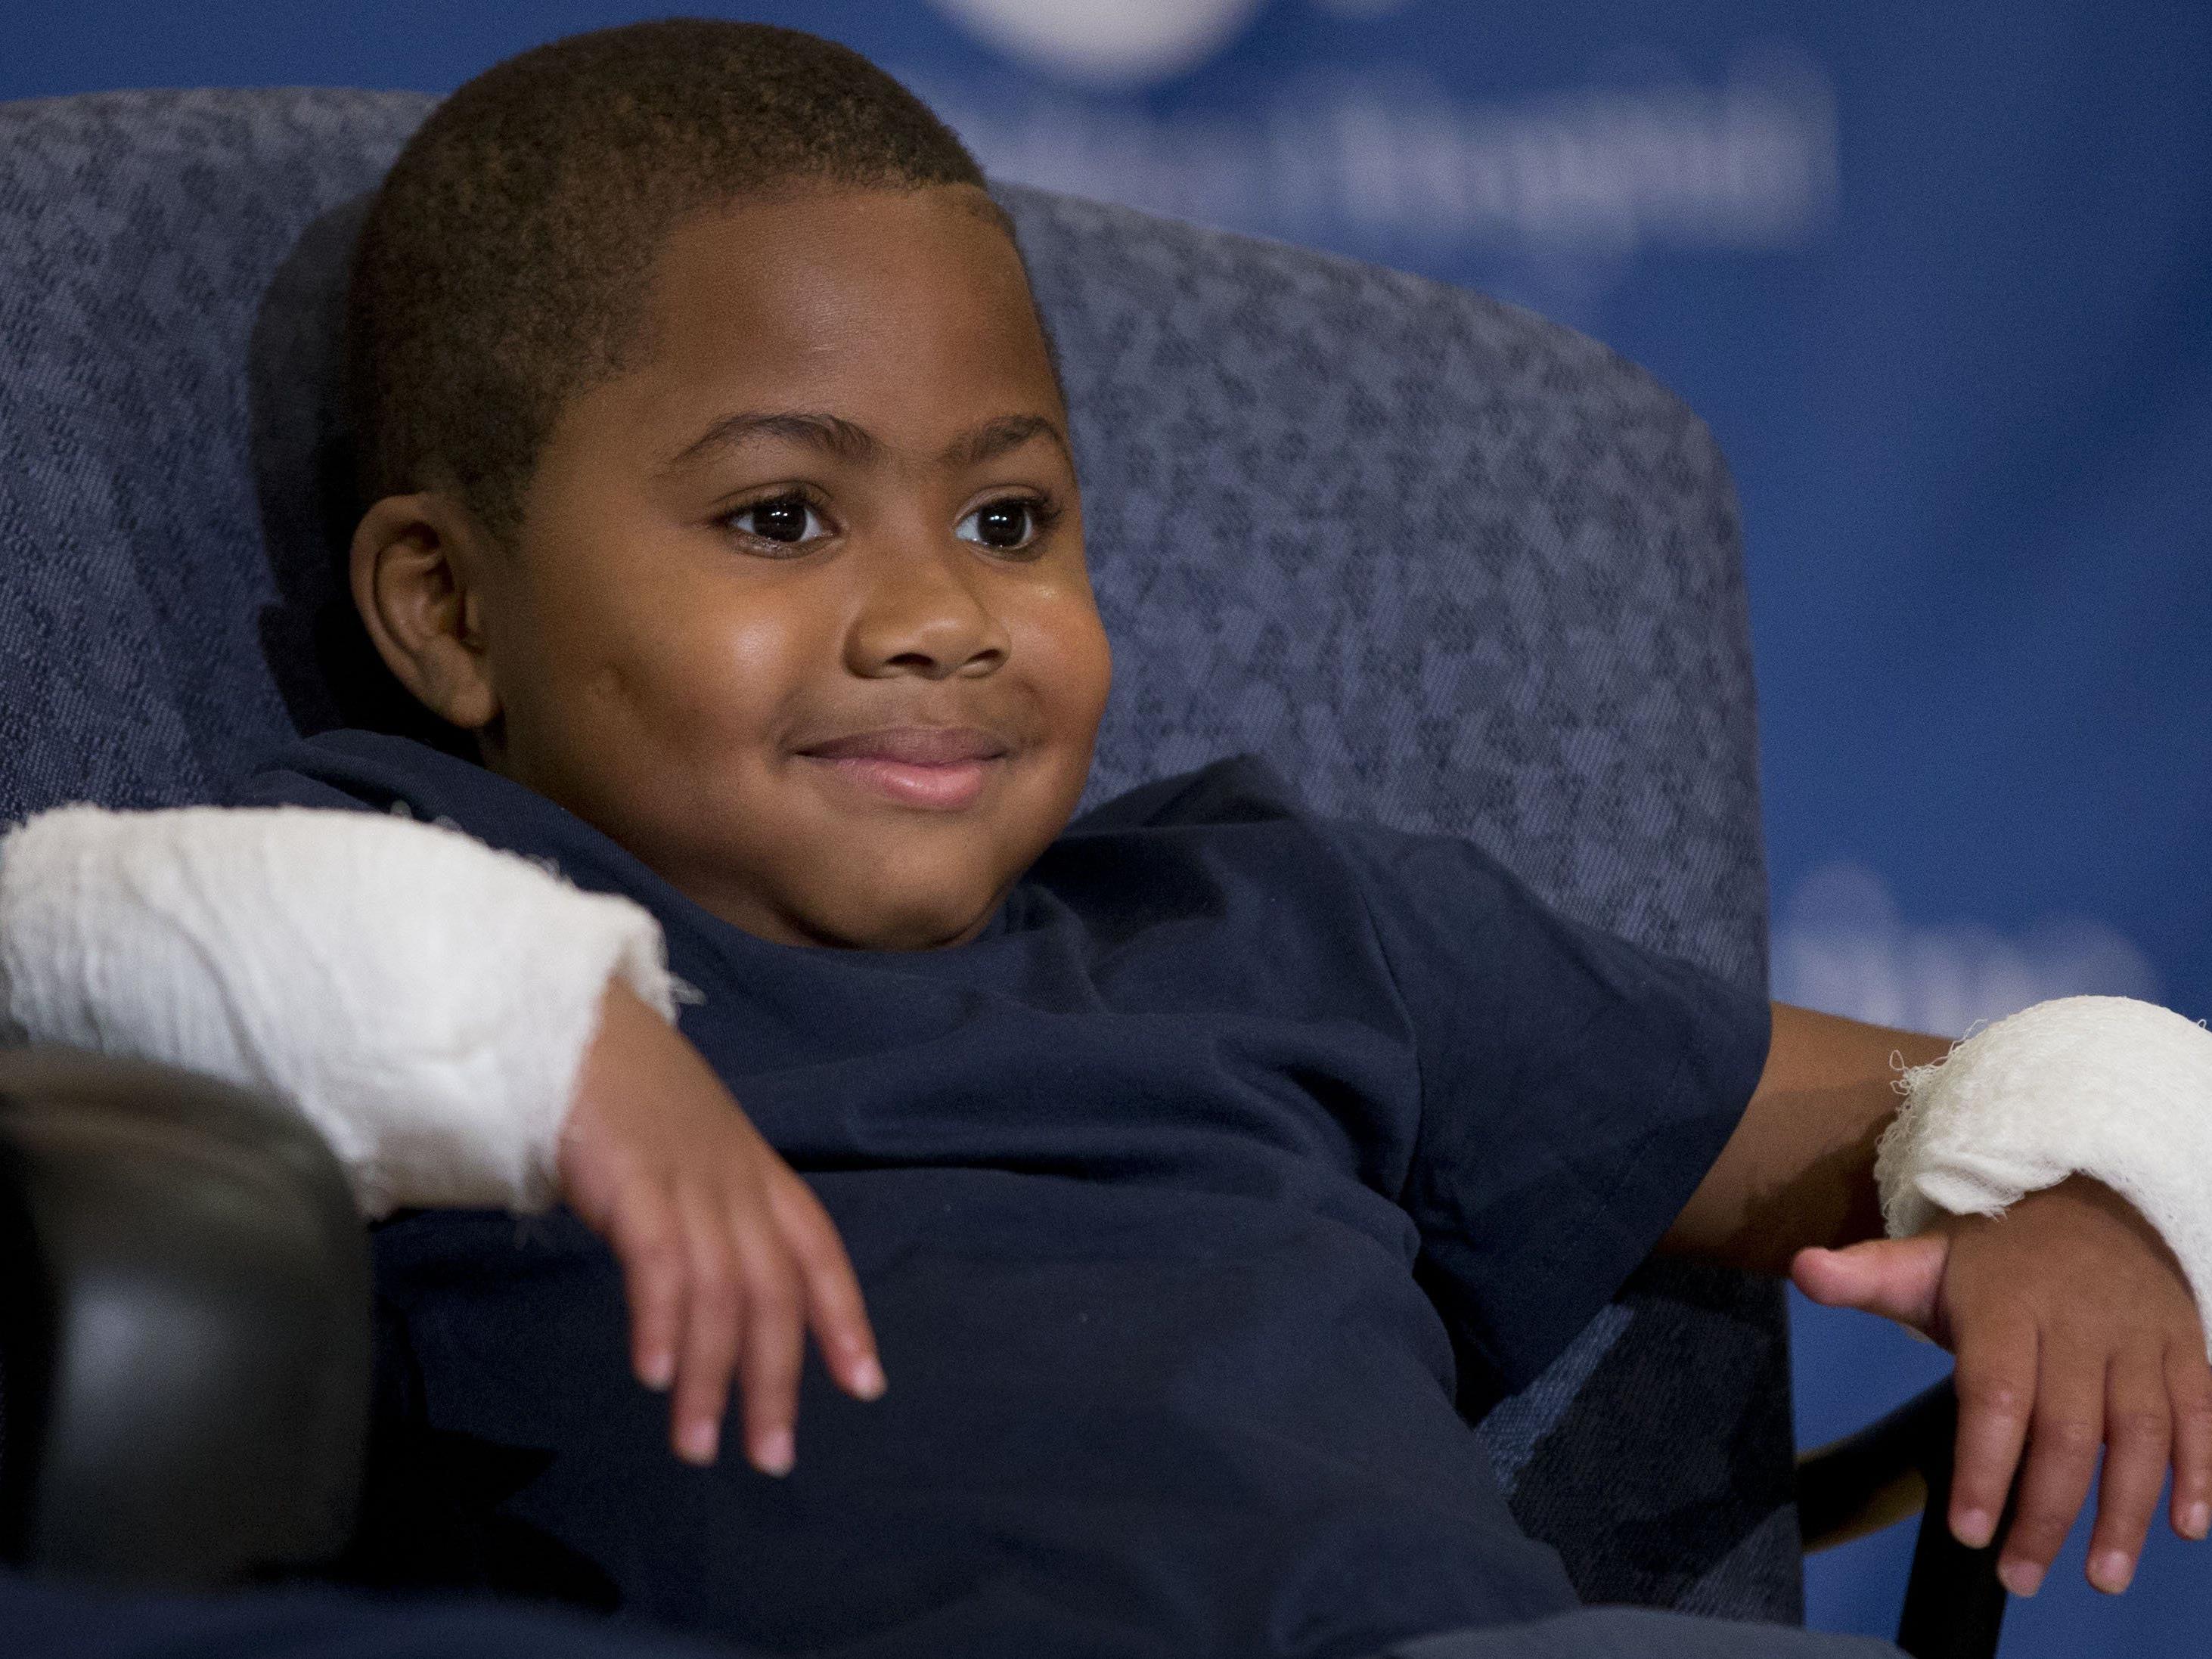 Zion Harvey erhielt in den USA als erstes Kind zwei Spender-Hände.